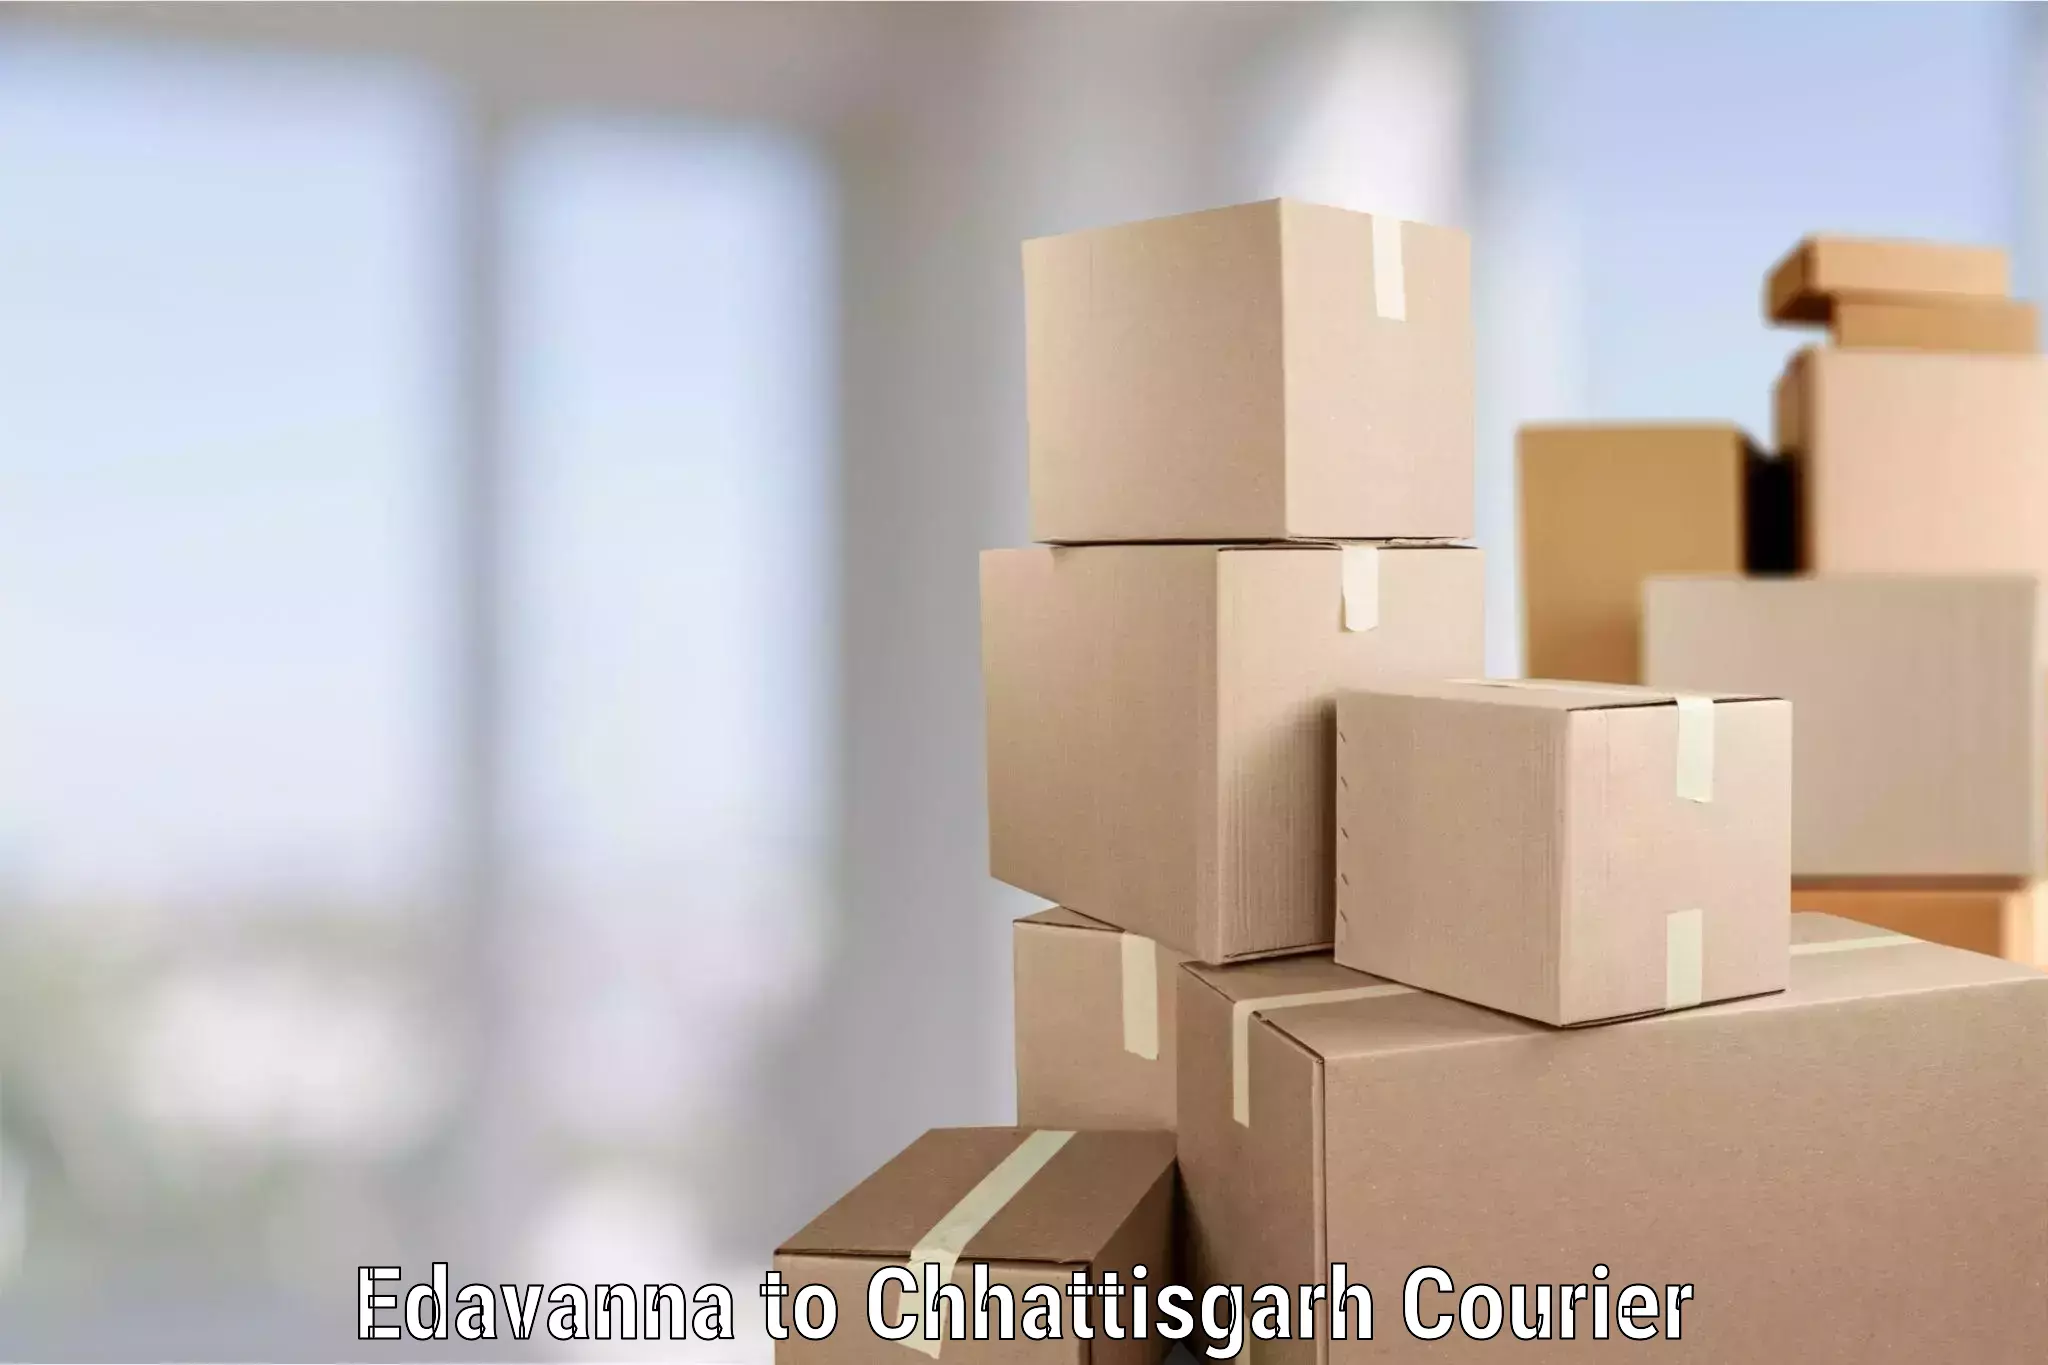 Professional home movers Edavanna to Chhattisgarh